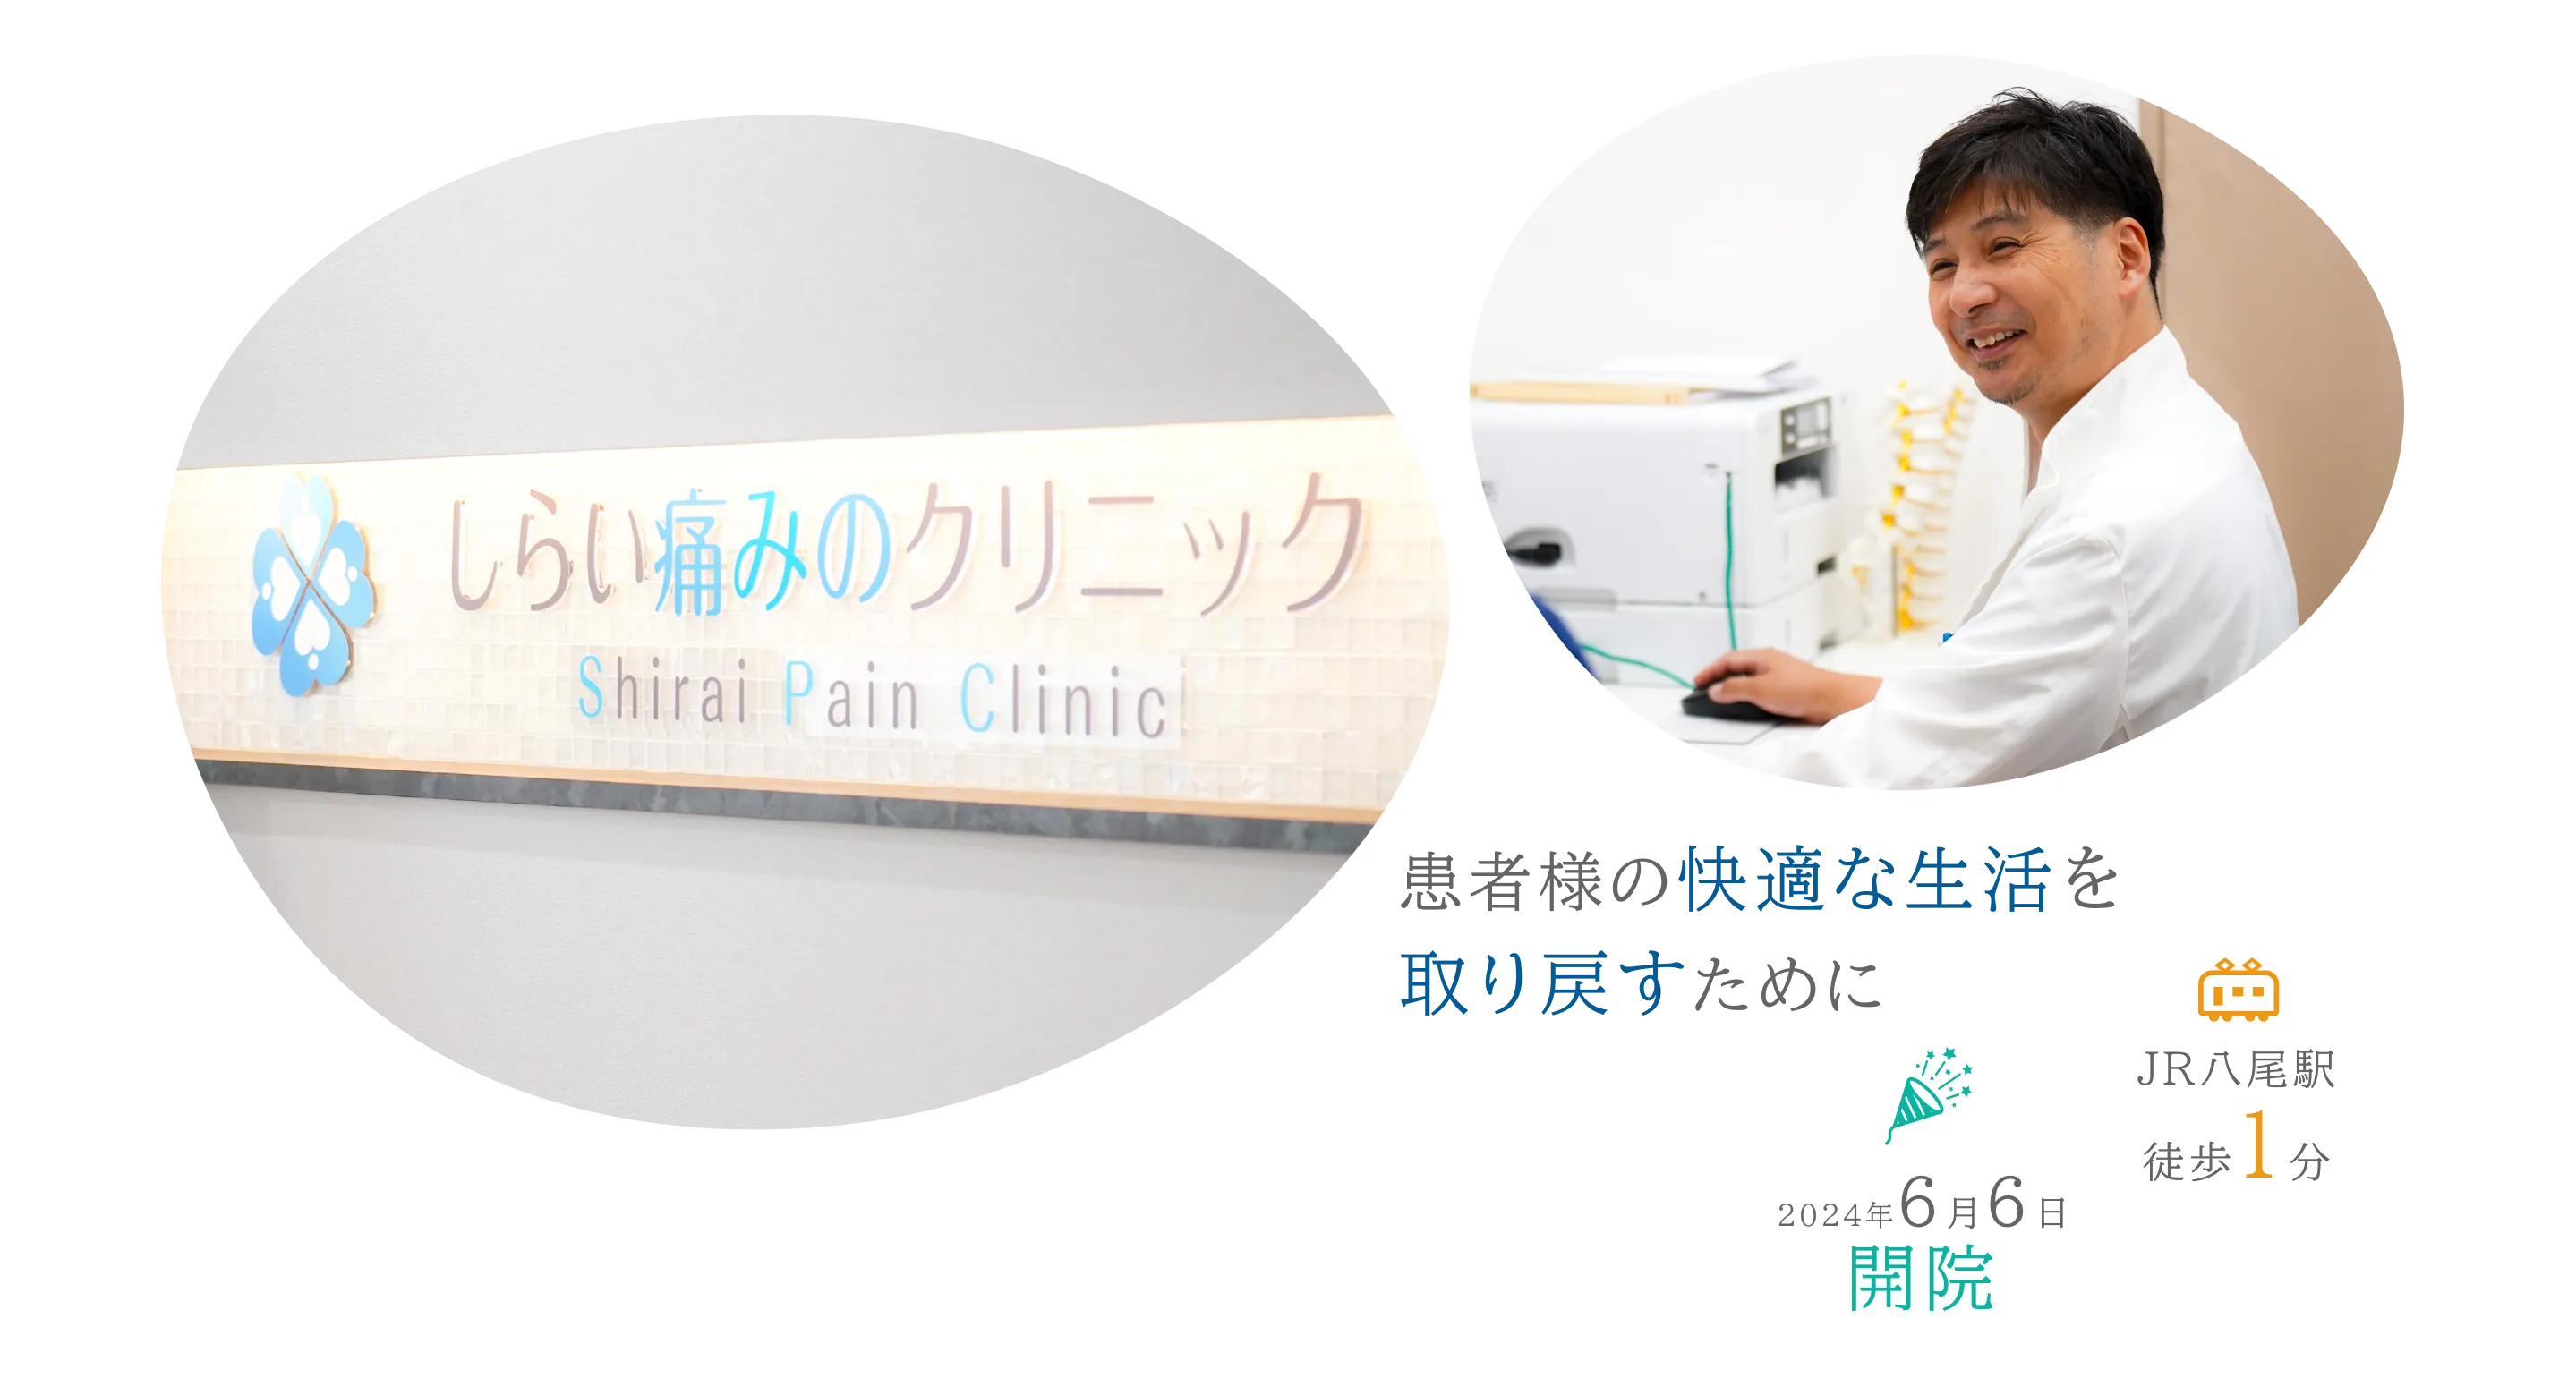 しらい痛みのクリニック Shirai Pain Clinic